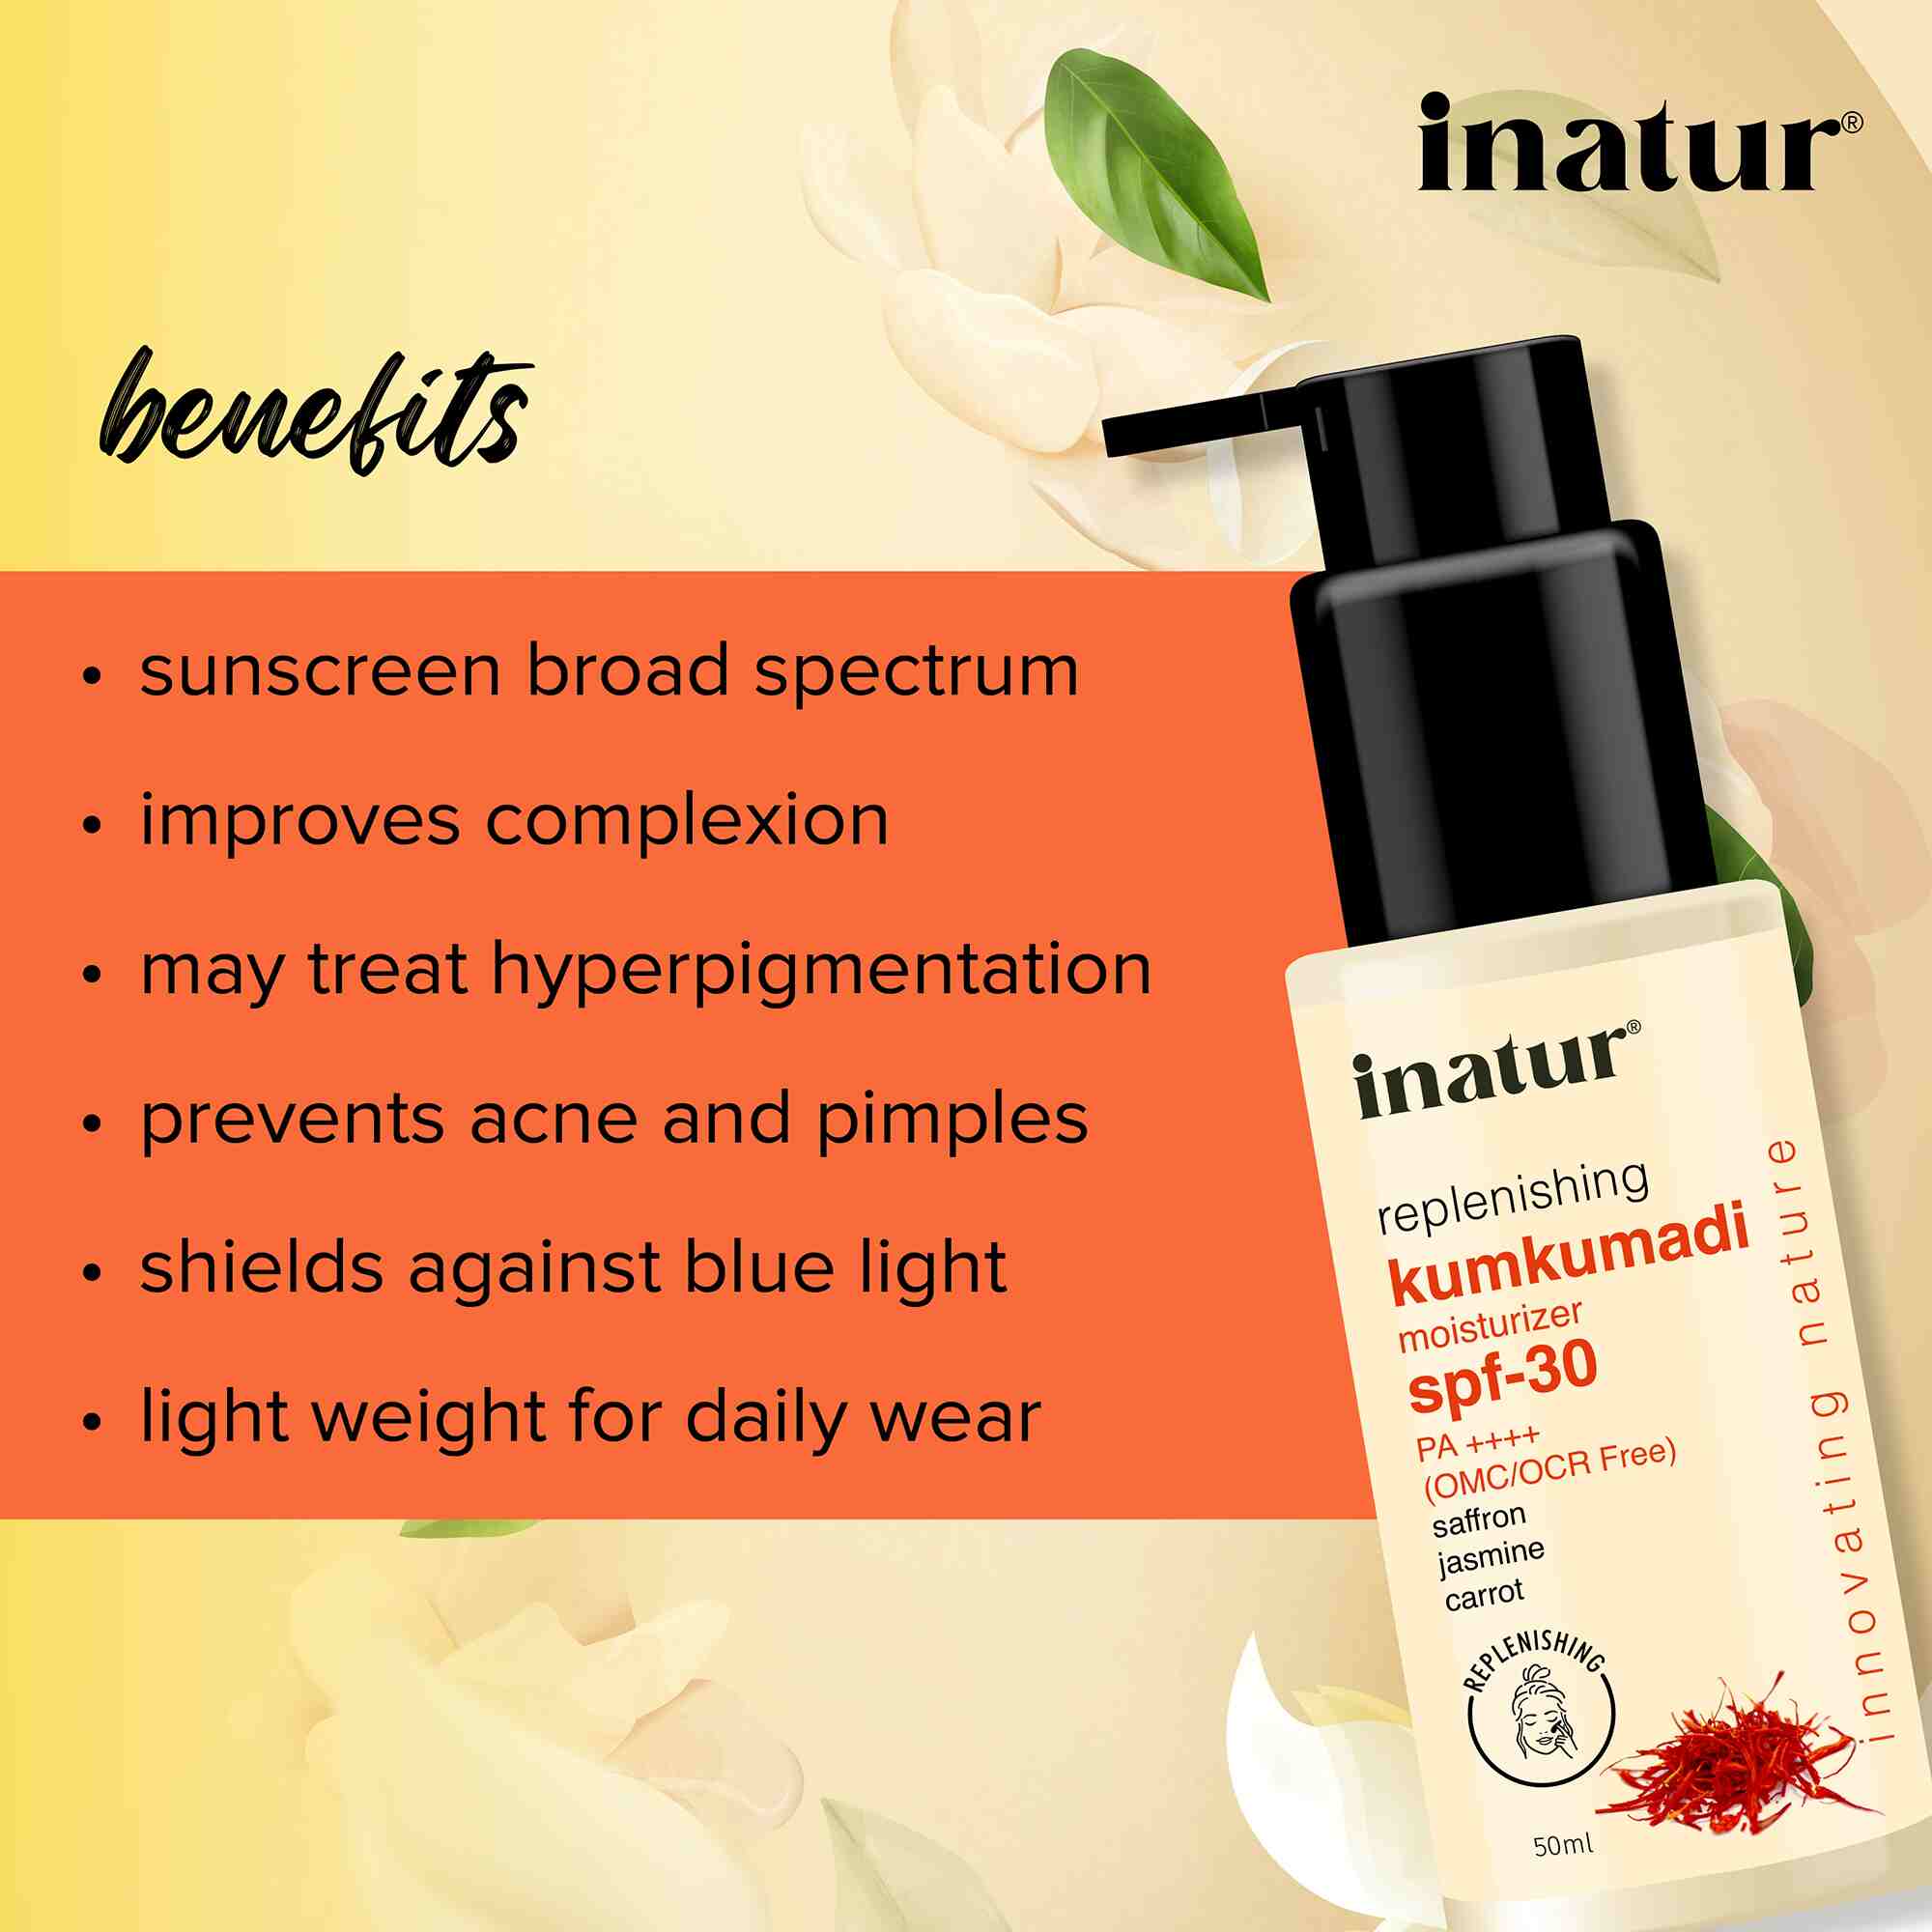 benefits of inatur kumkumadi moisturizer spf30